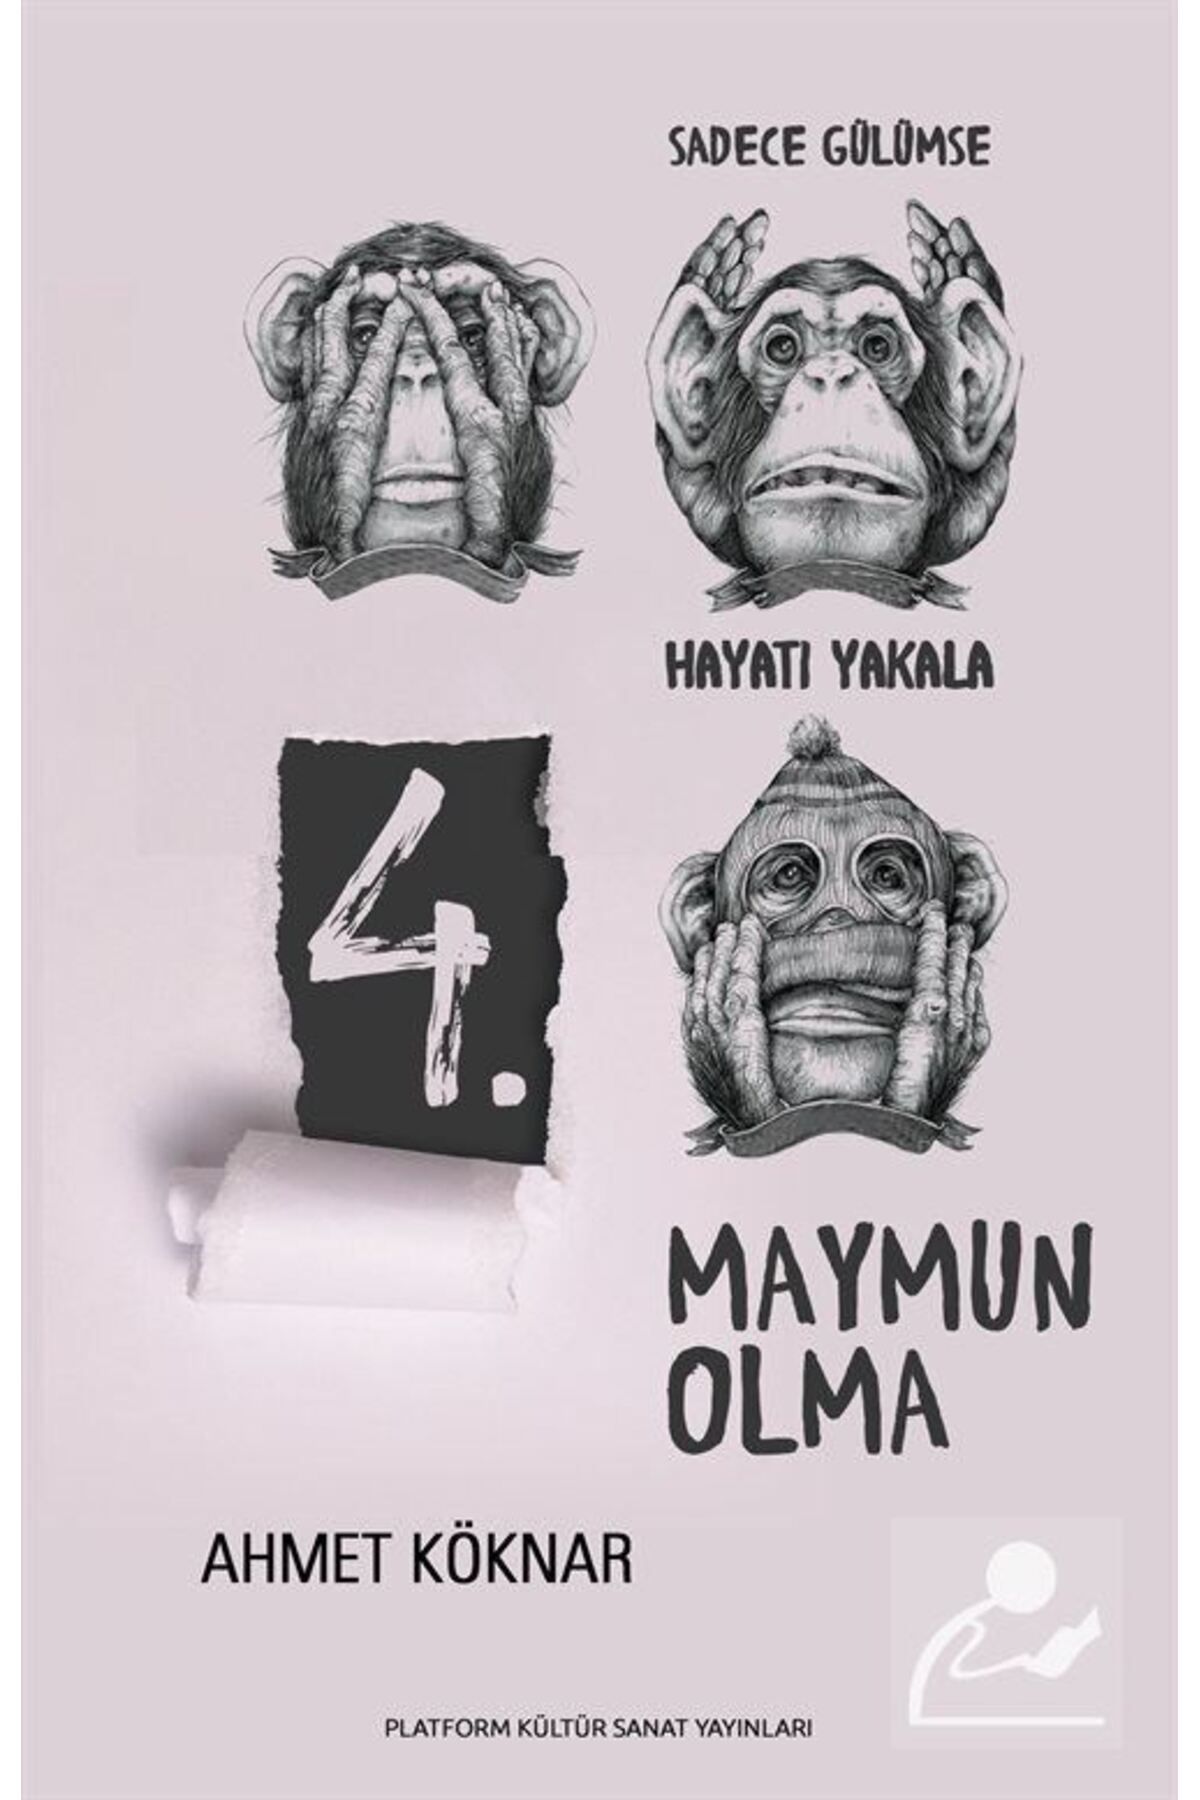 Platform Kültür Sanat Yayınları 4. Maymun Olma & Sadece Gülümse, Hayatı Yakala